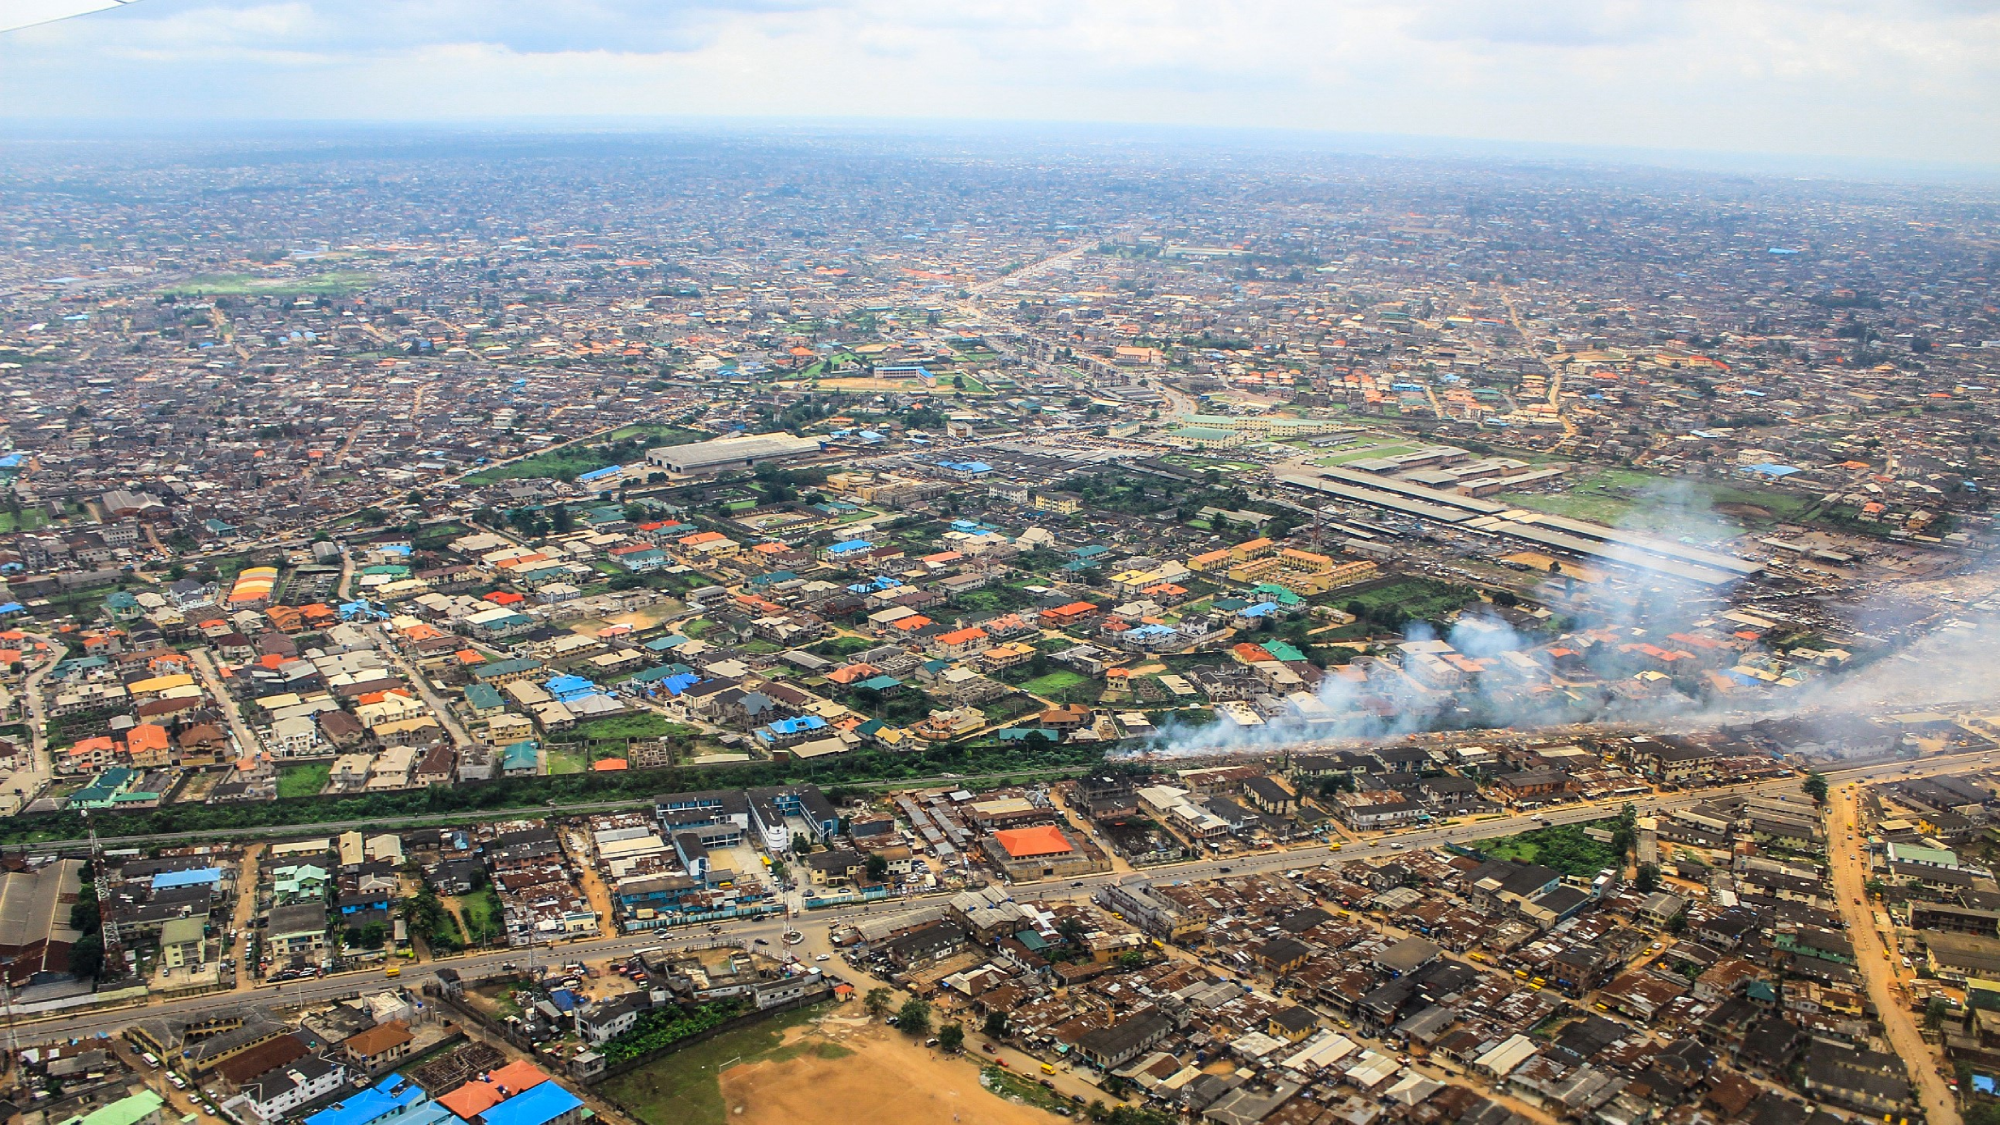 Aerial view of Dar es Salaam. 